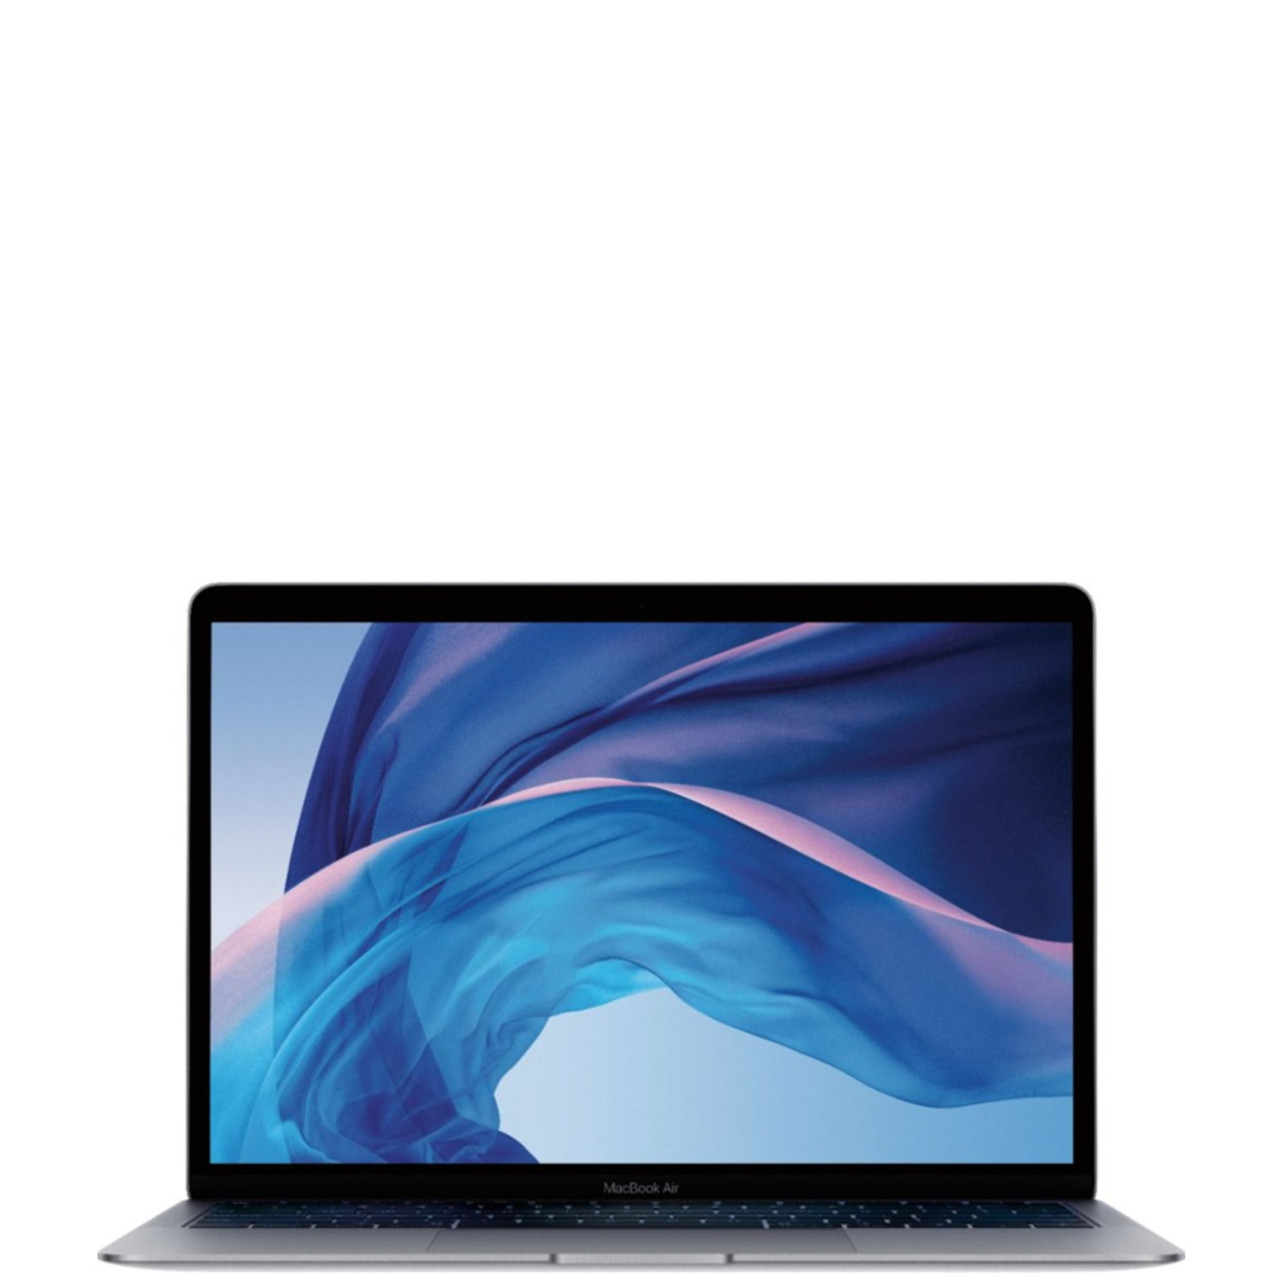 Apple MacBook Air 13-inch 1.6GHz Core i5 (Retina